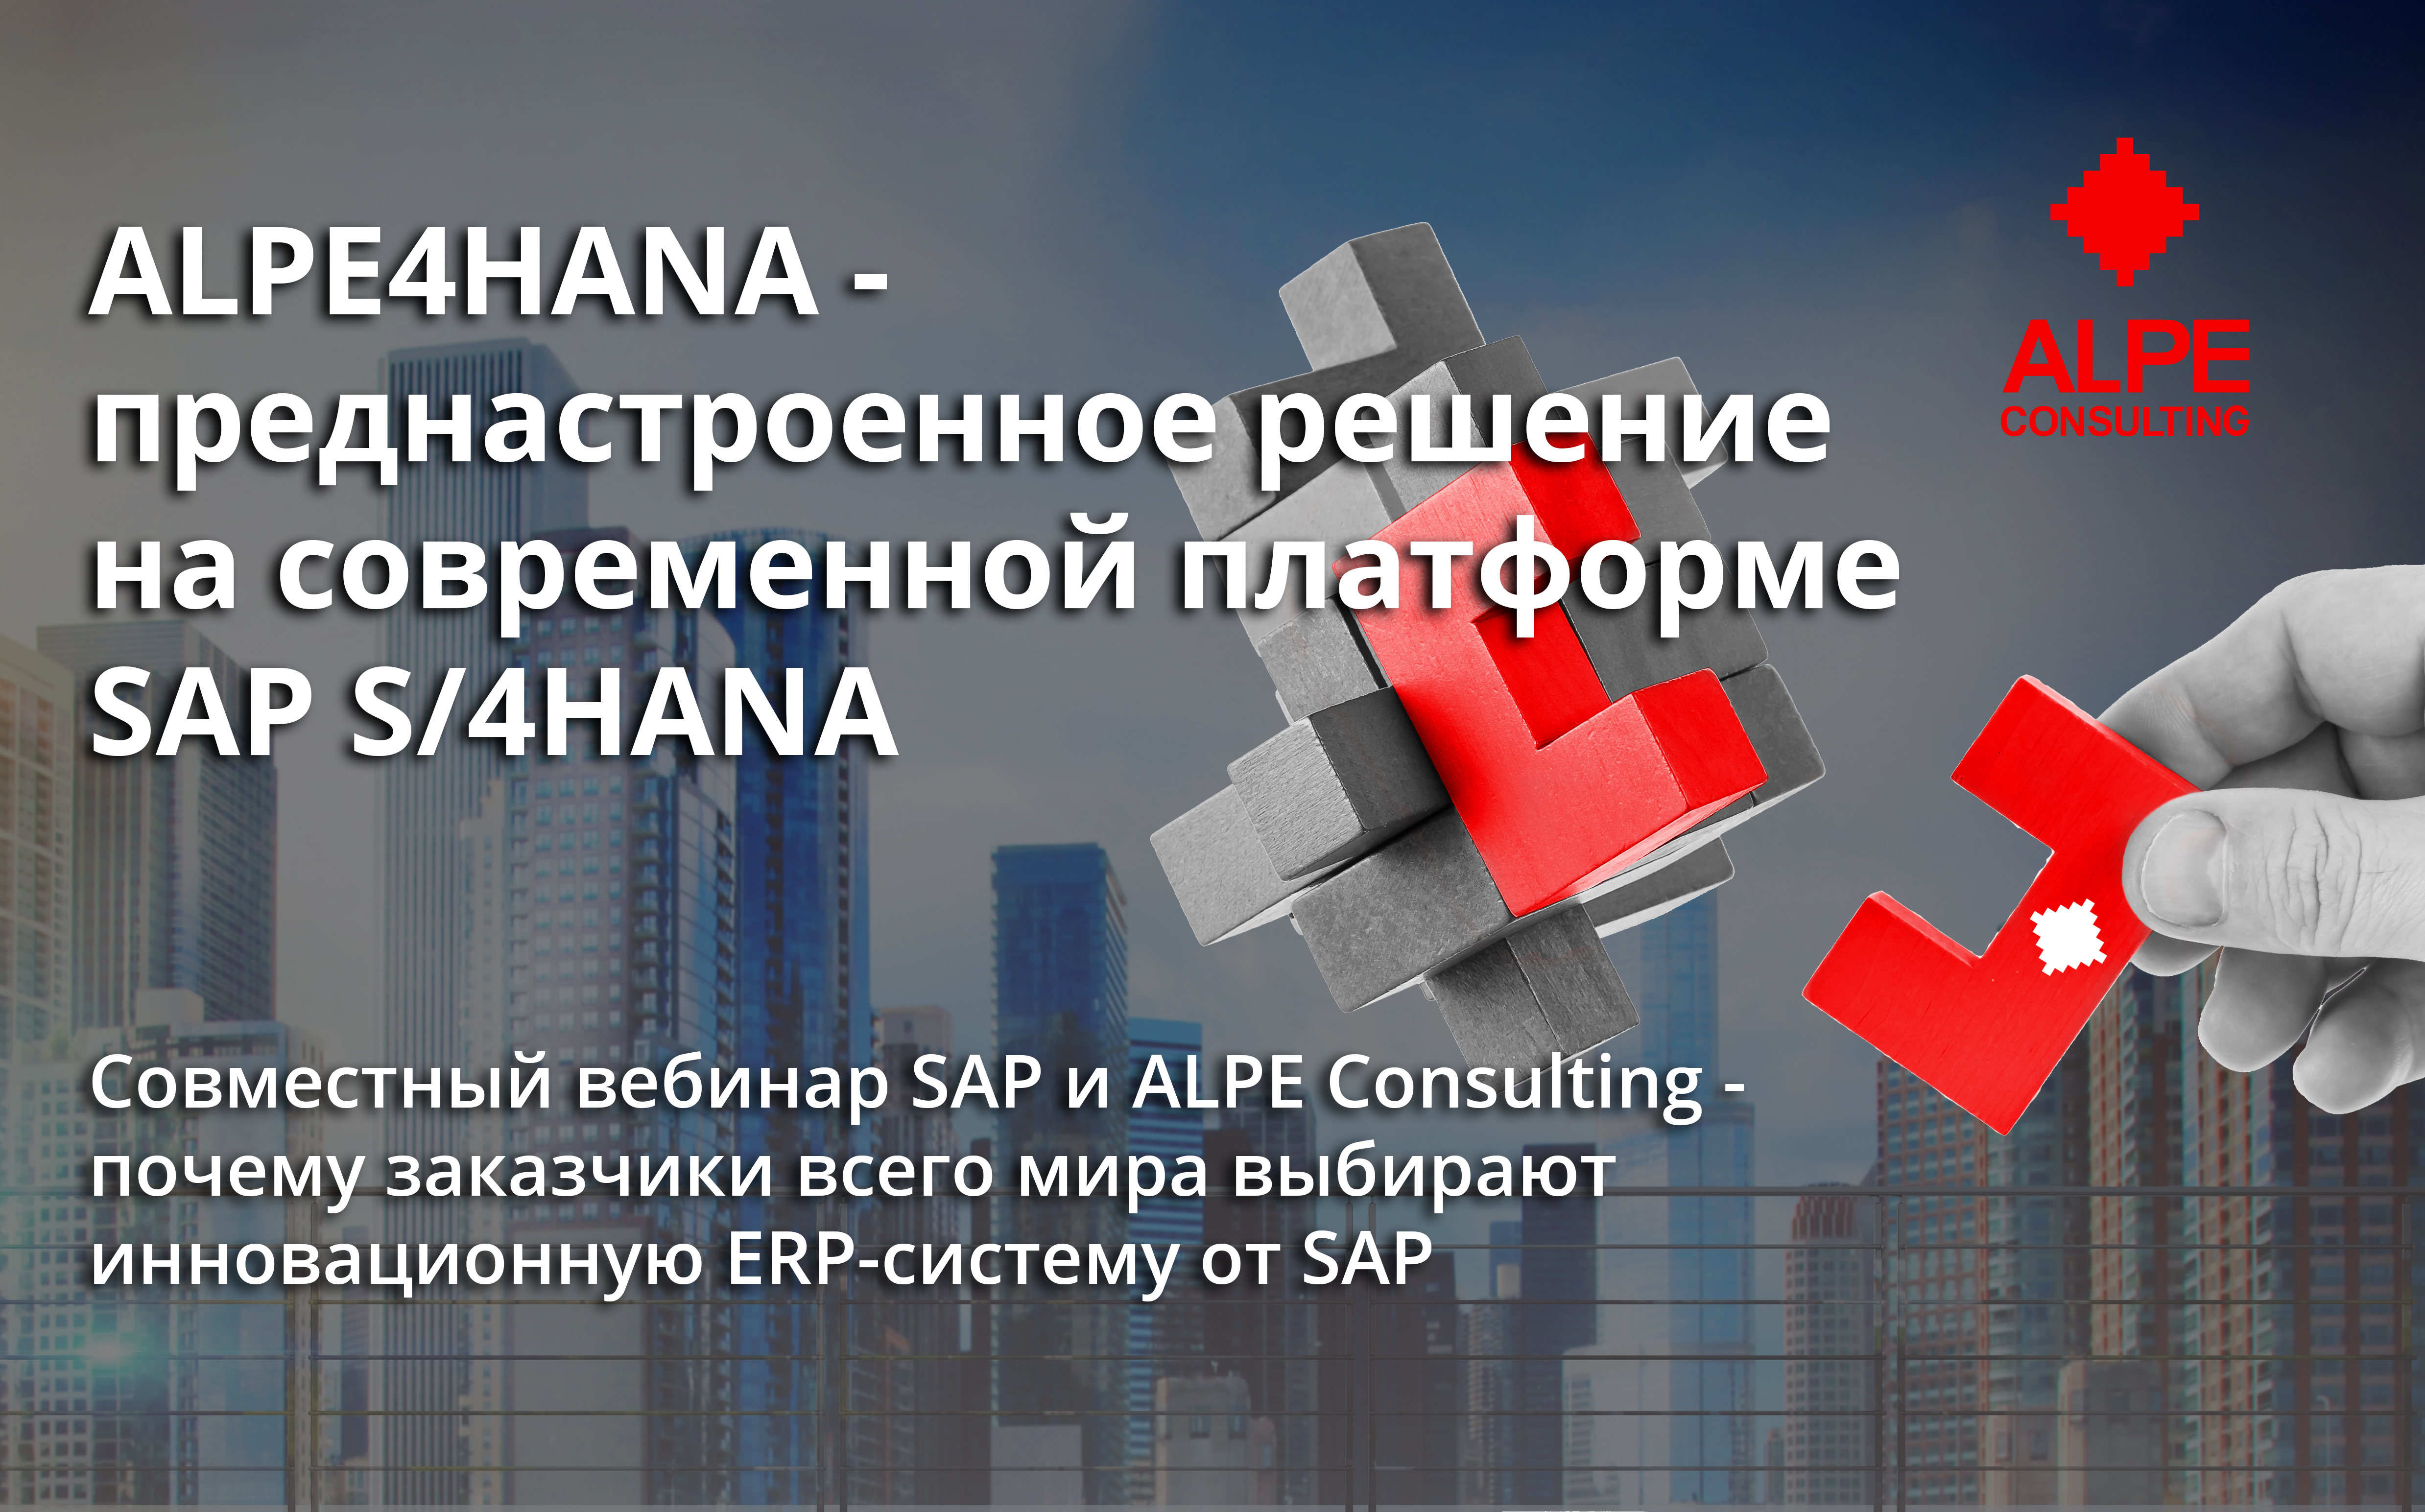 13 мая состоялся совместный вебинар SAP и ALPE consulting о преднастроенном решении ALPE4HANA